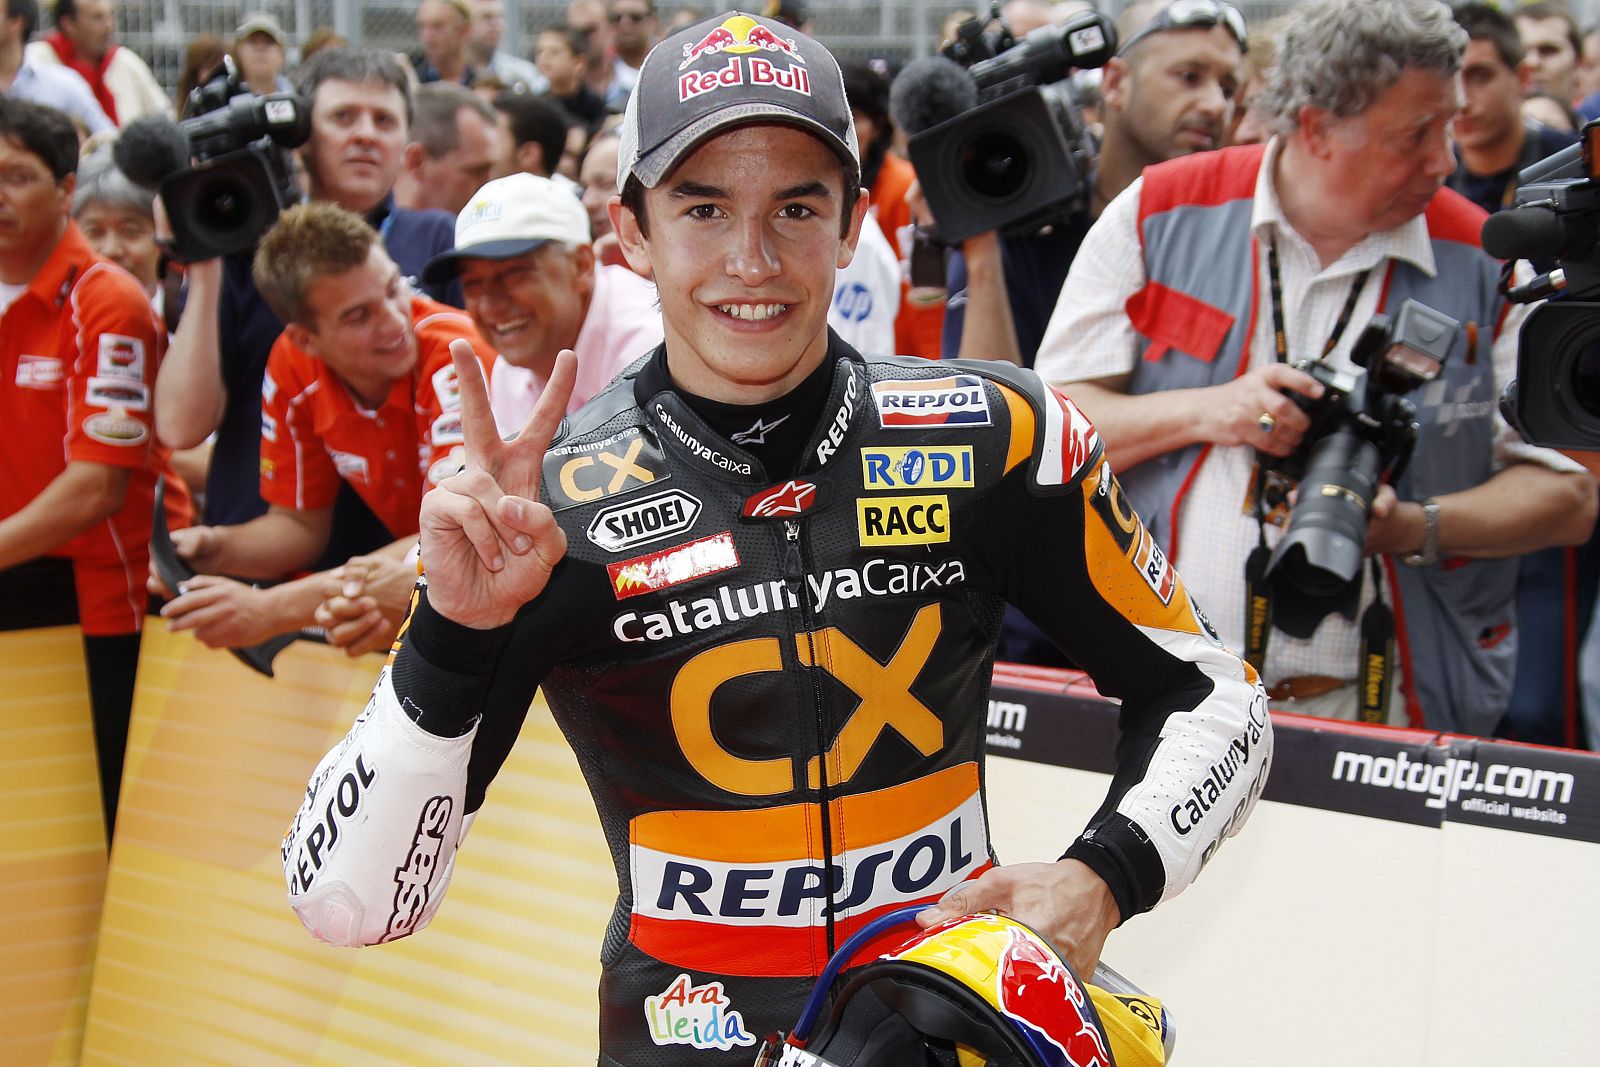 El sueño del piloto catalán es dar el salto a MotoGP en 2013 y luchar con Rossi.